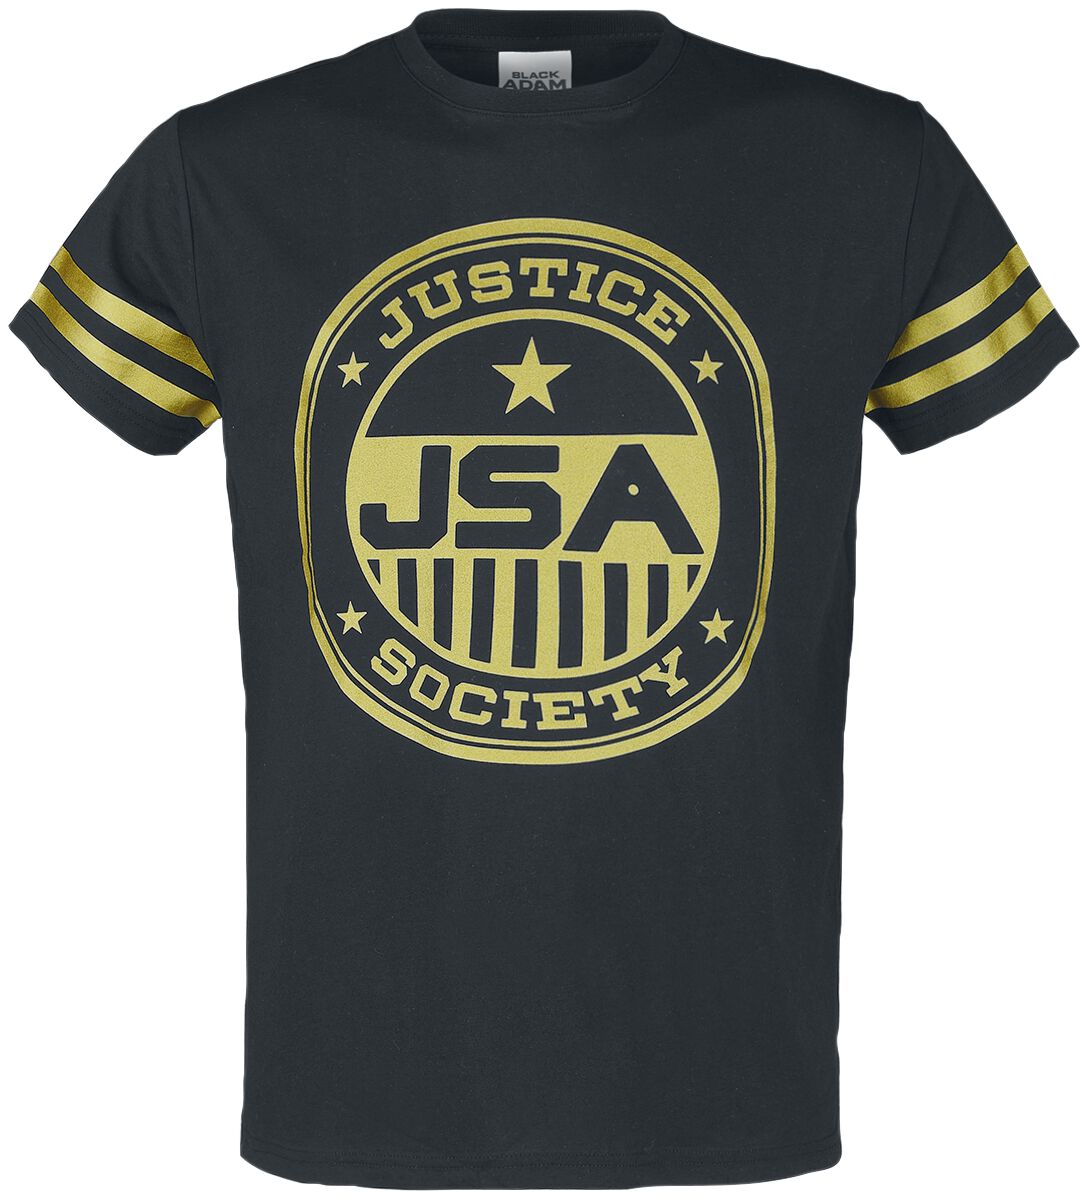 Black Adam - DC Comics T-Shirt - JSA Justice Society - S bis M - für Männer - Größe M - schwarz  - EMP exklusives Merchandise!